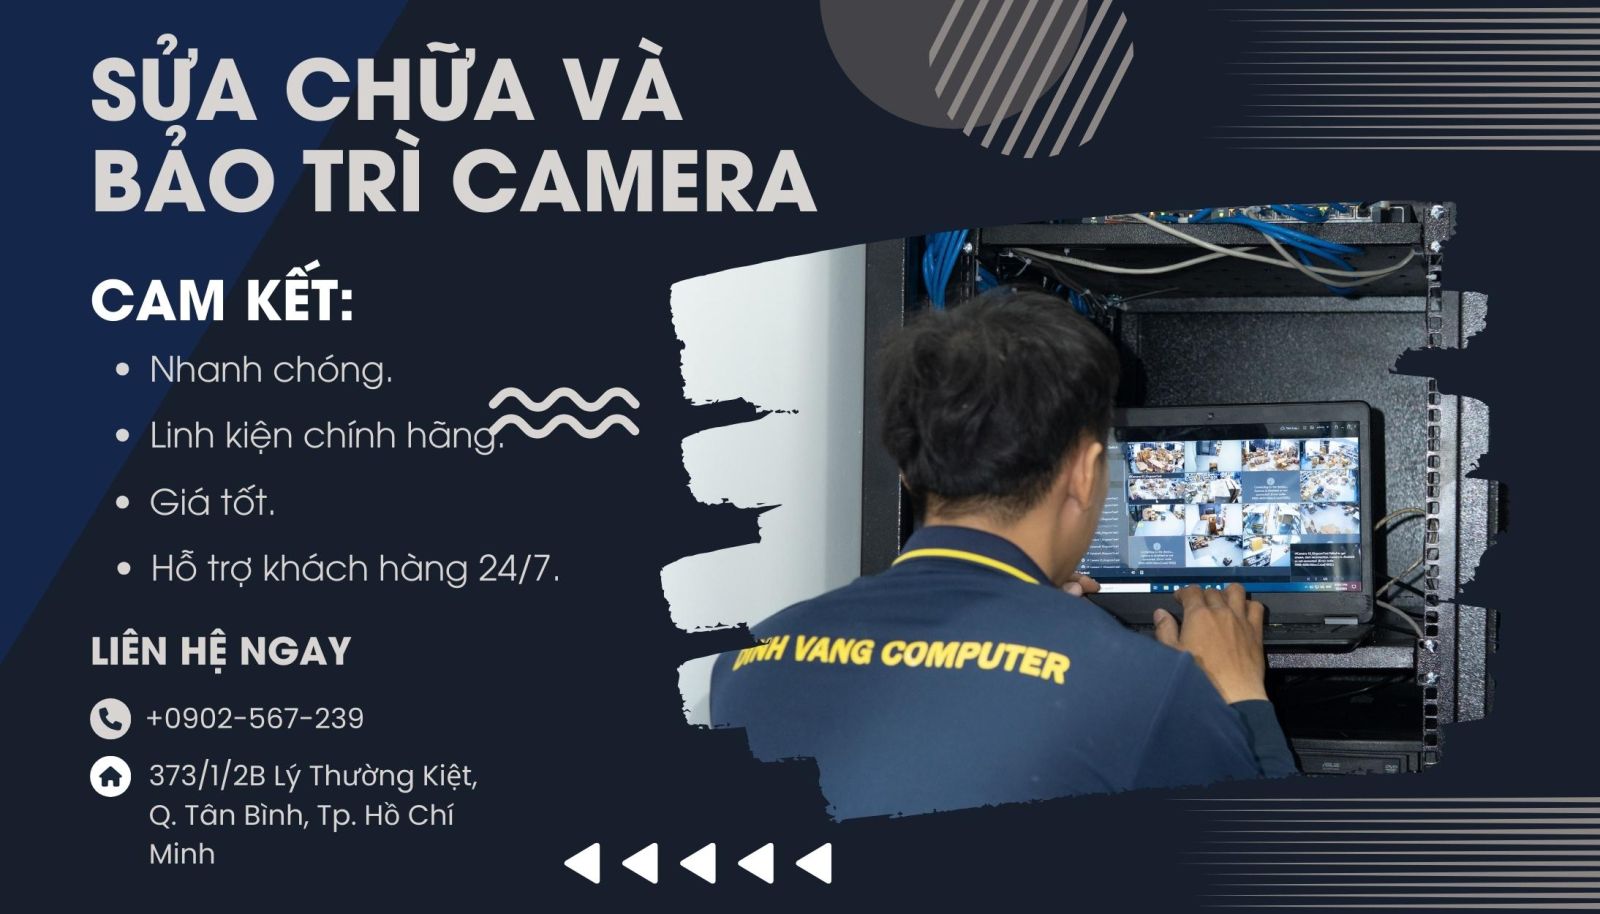 Đỉnh Vàng Computer chuyên cung cấp dịch vụ bảo trì và sửa chữa camera tại TPHCM và Bình Dương.